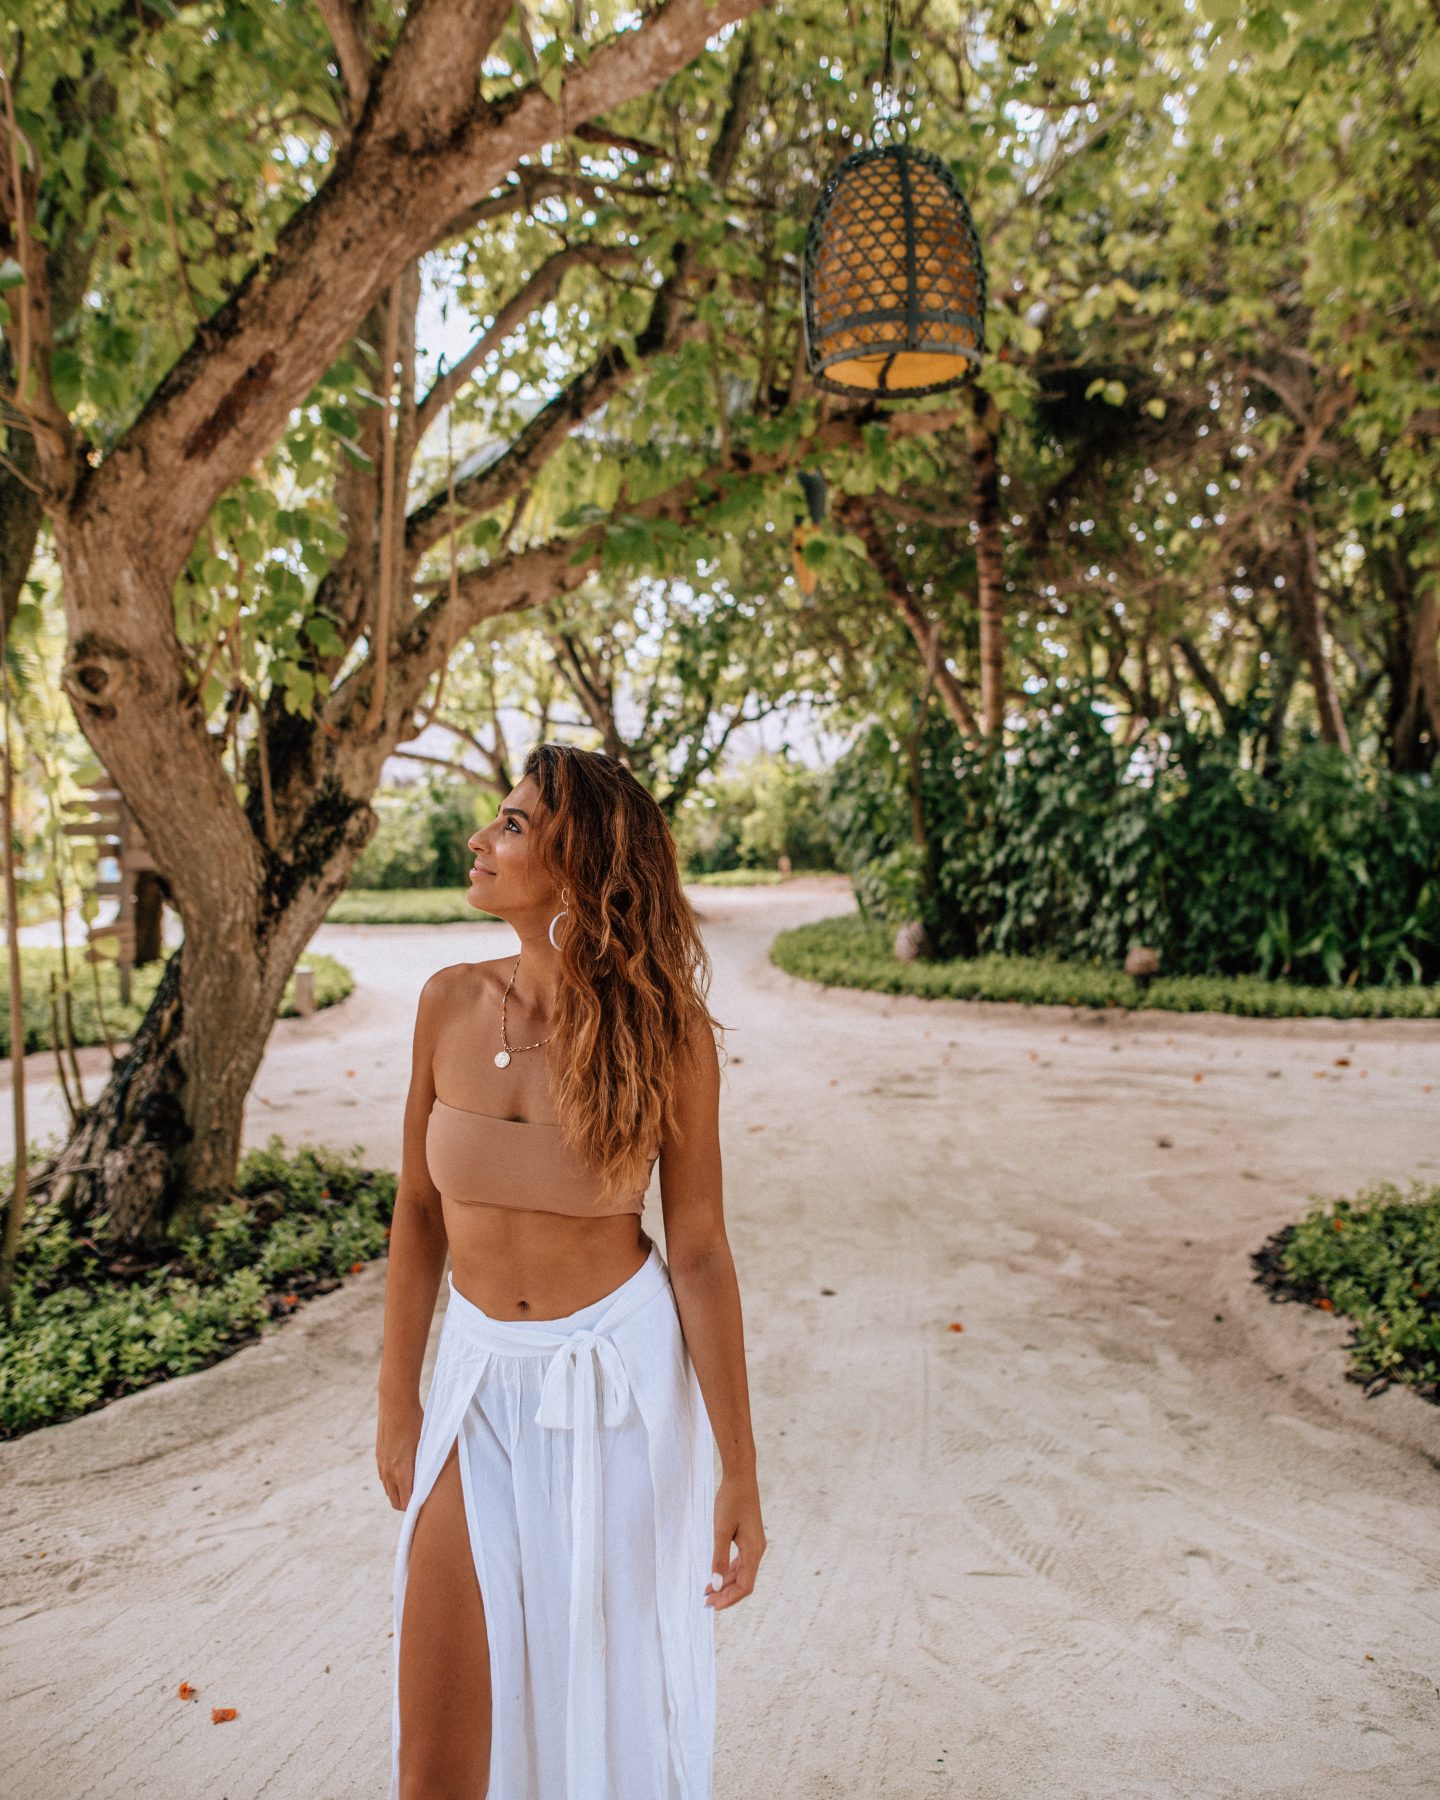 Woman walking around Anantara Dhigu Resort in the Maldives